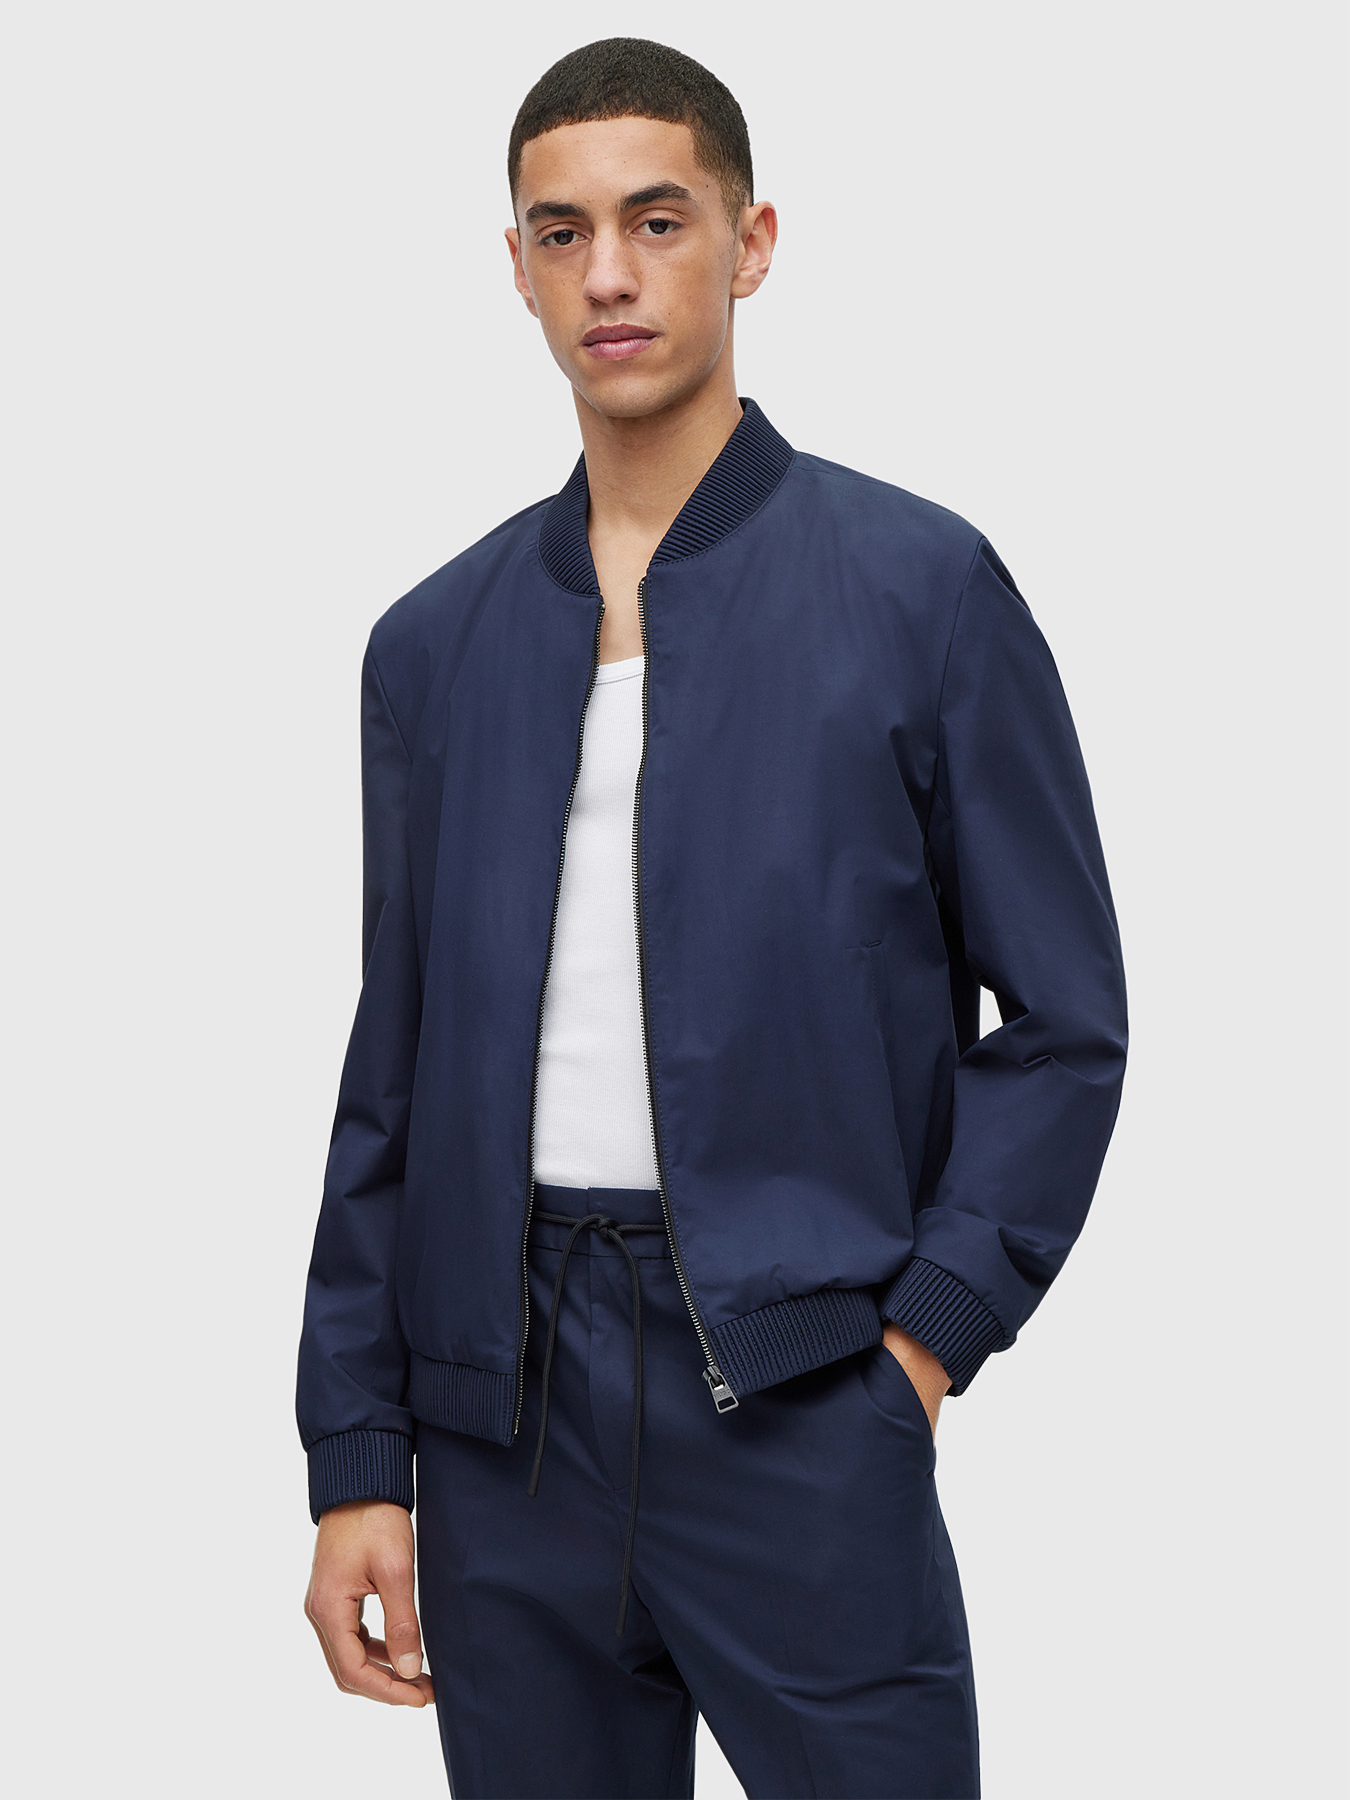 Blue transitional jacket UKASHI brand HUGO — Globalbrandsstore.com/en